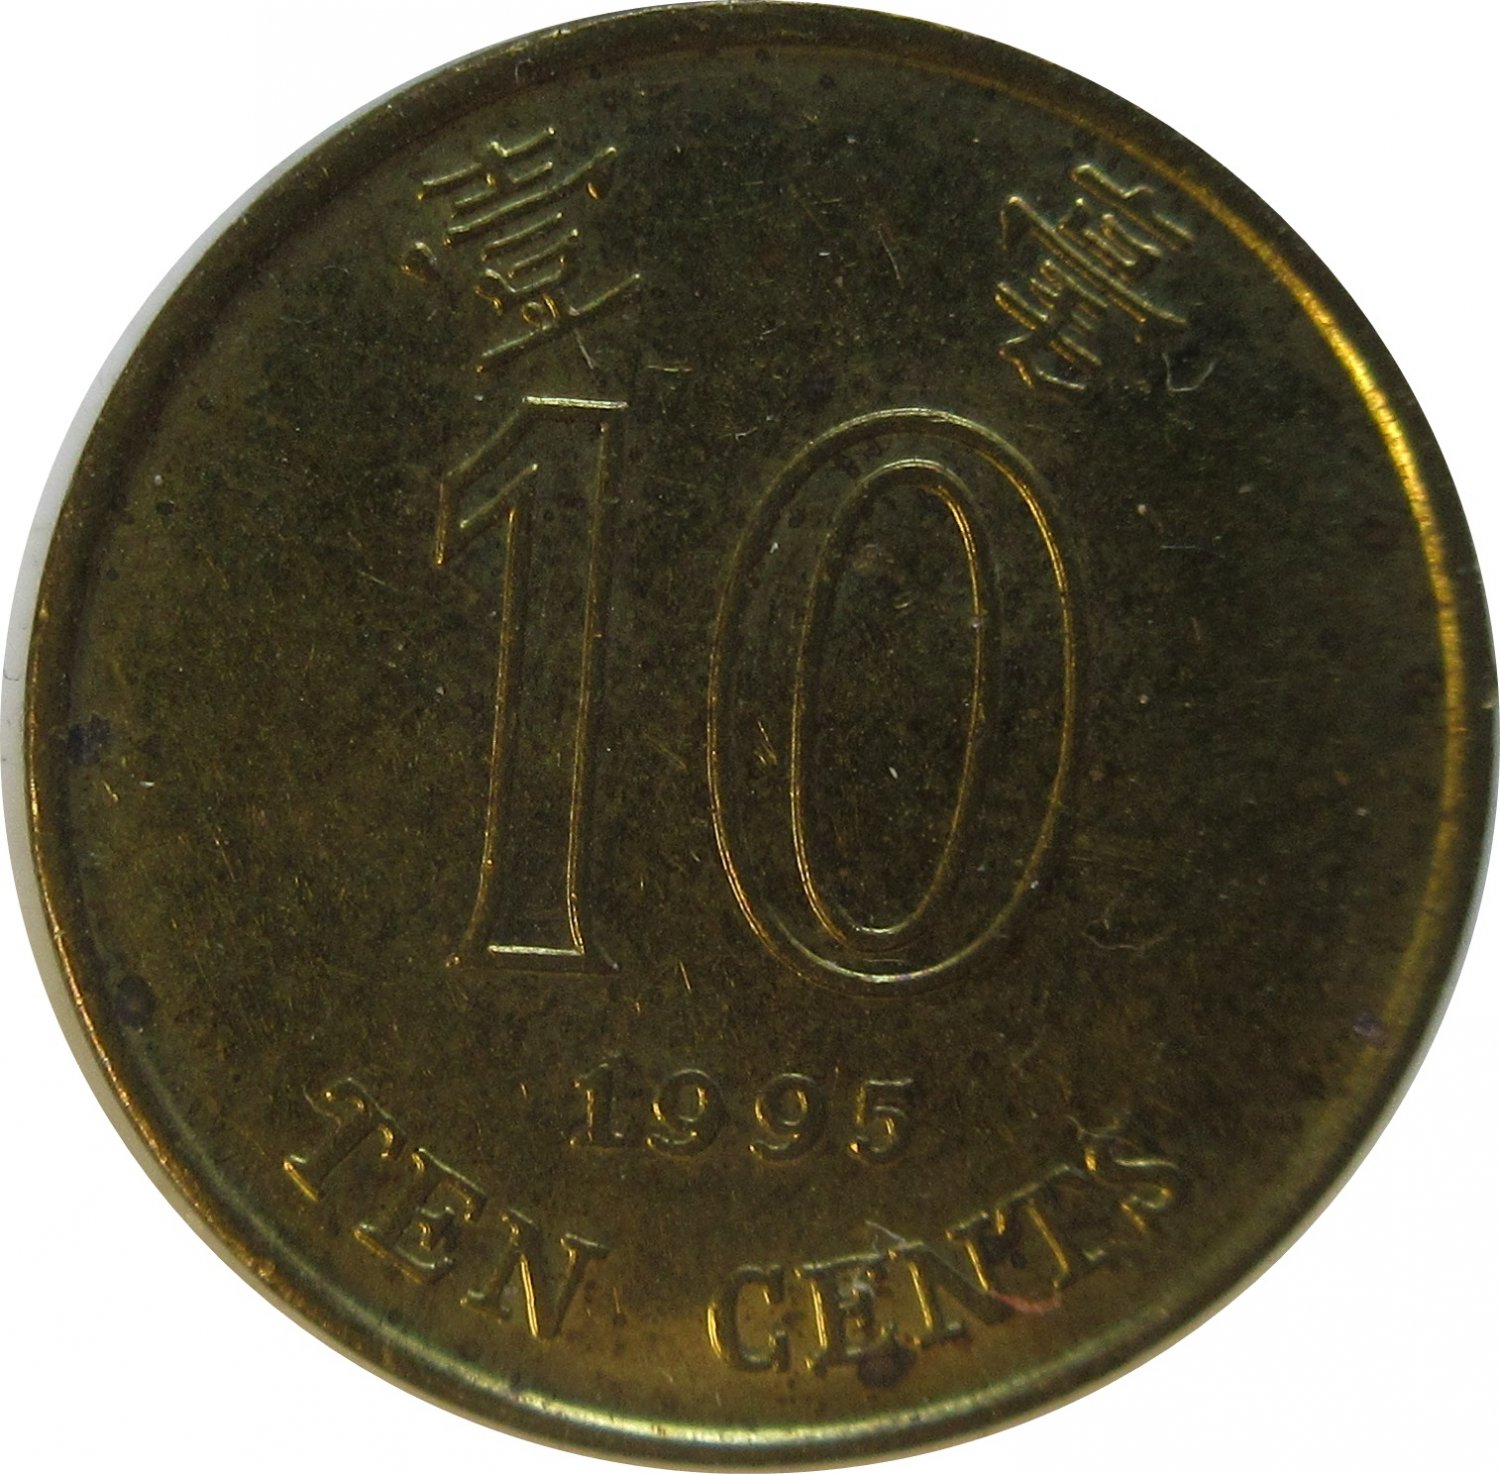 1995 Hong Kong 10 Cent